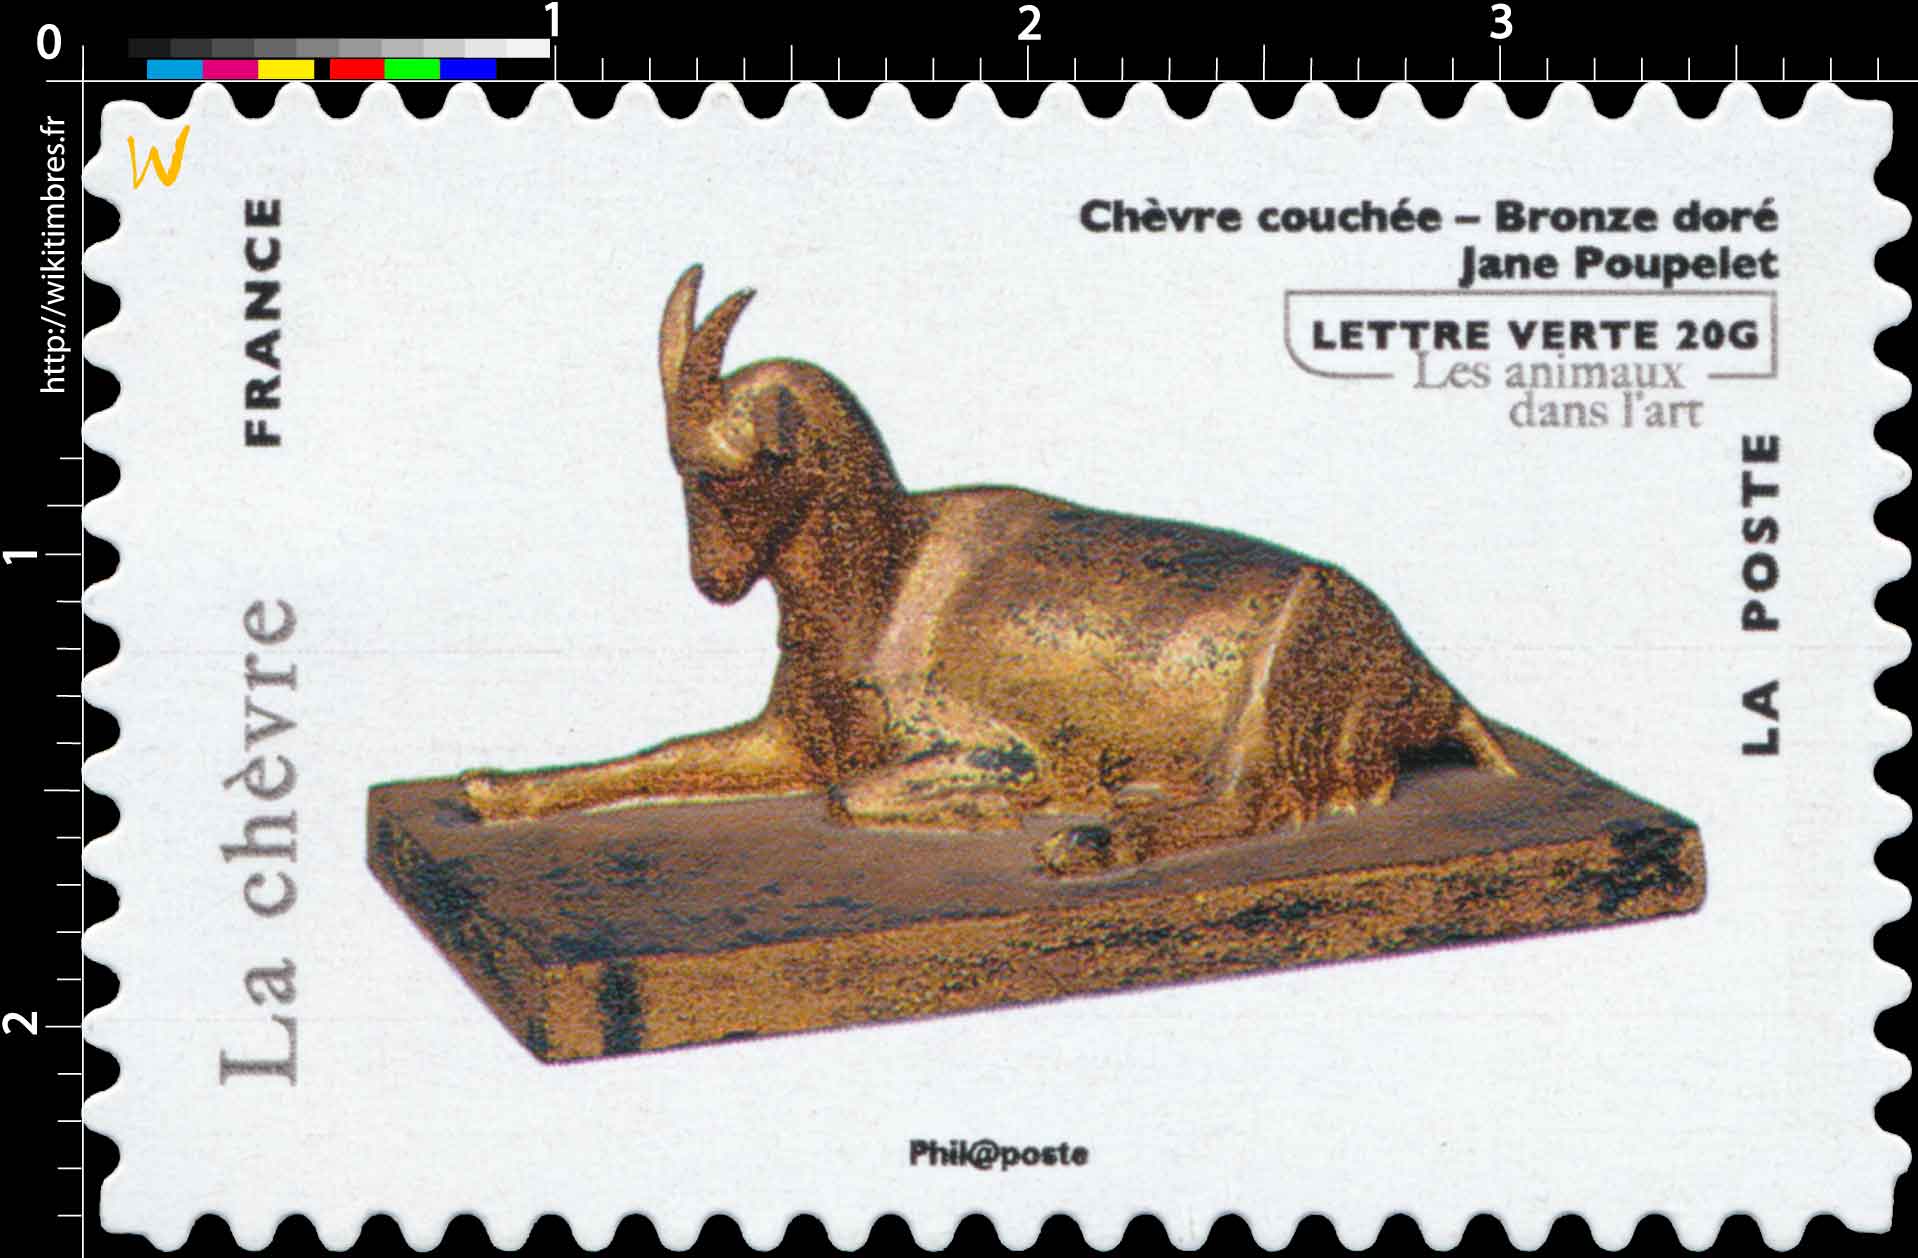 Chèvre couchée - Bronze doré - Jane Poupelet- les animaux dans l'art